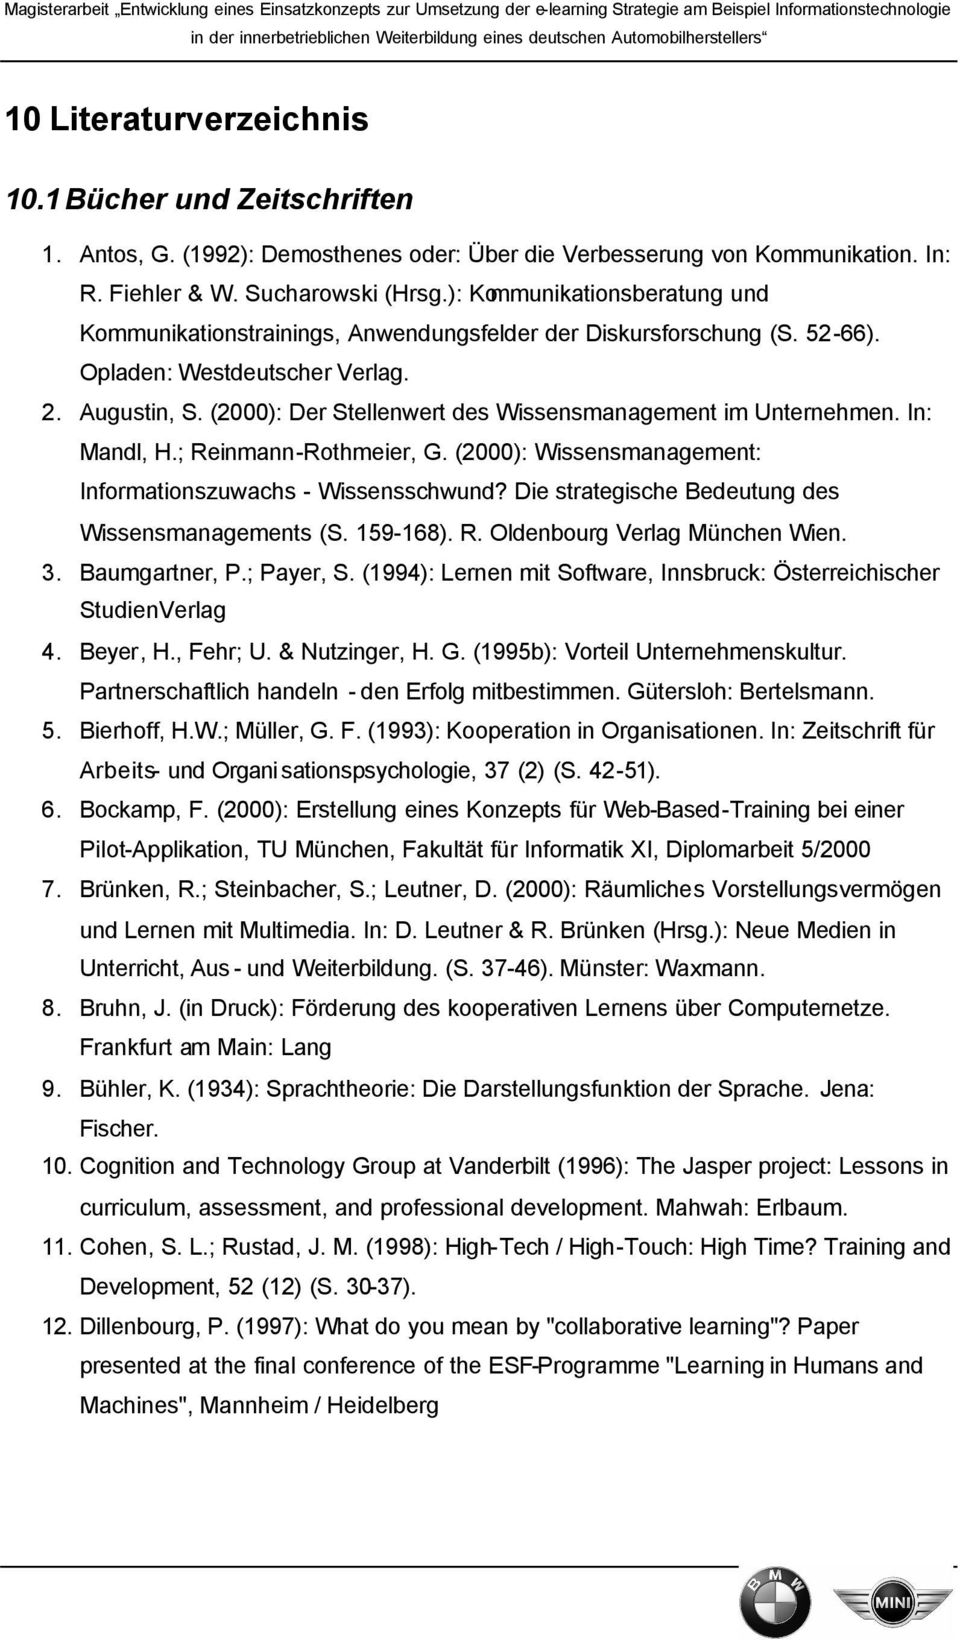 (2000): Der Stellenwert des Wissensmanagement im Unternehmen. In: Mandl, H.; Reinmann-Rothmeier, G. (2000): Wissensmanagement: Informationszuwachs - Wissensschwund?